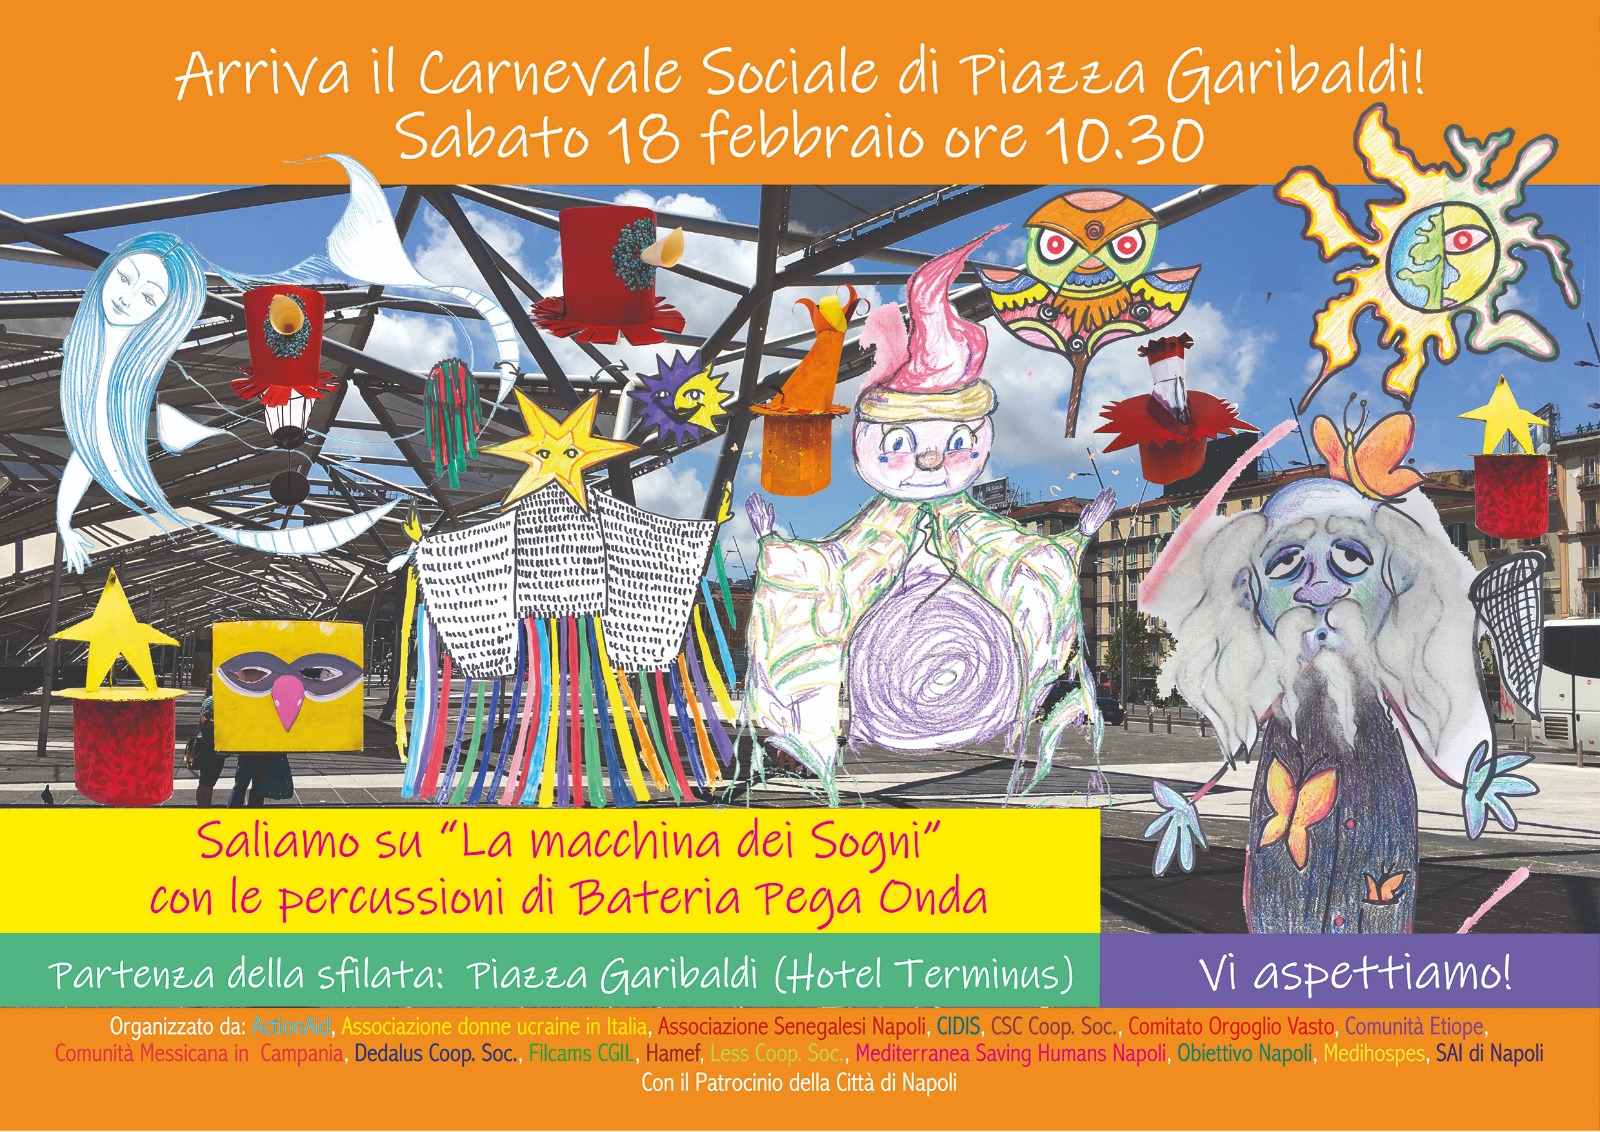 Carnevale sociale di Piazza Garibaldi: sabato 18 febbraio appuntamento con la Macchina dei sogni